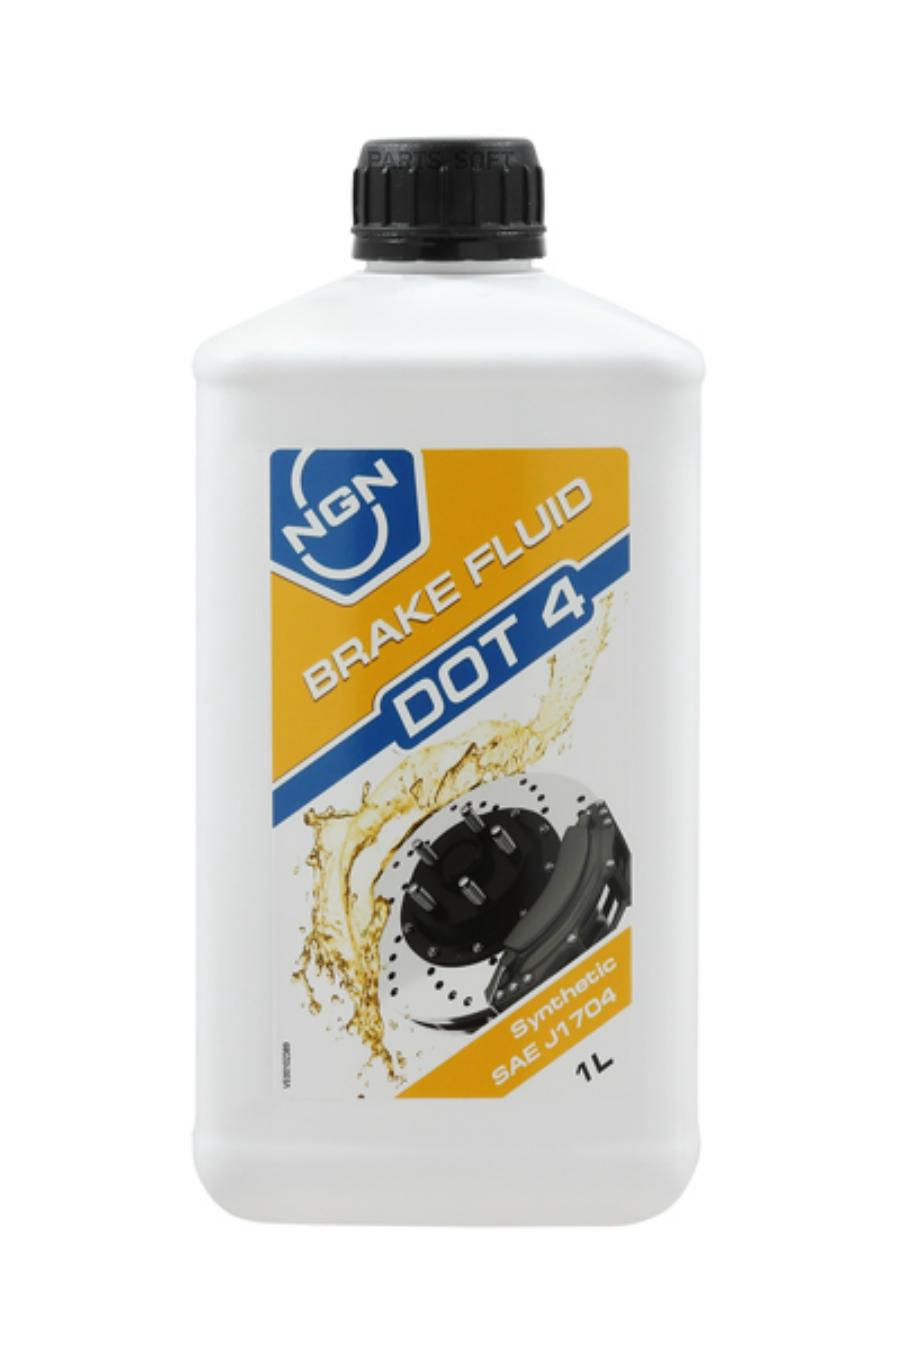 Жидкость Тормозная Brakefluid Dot4 1l NGN арт. V172085703